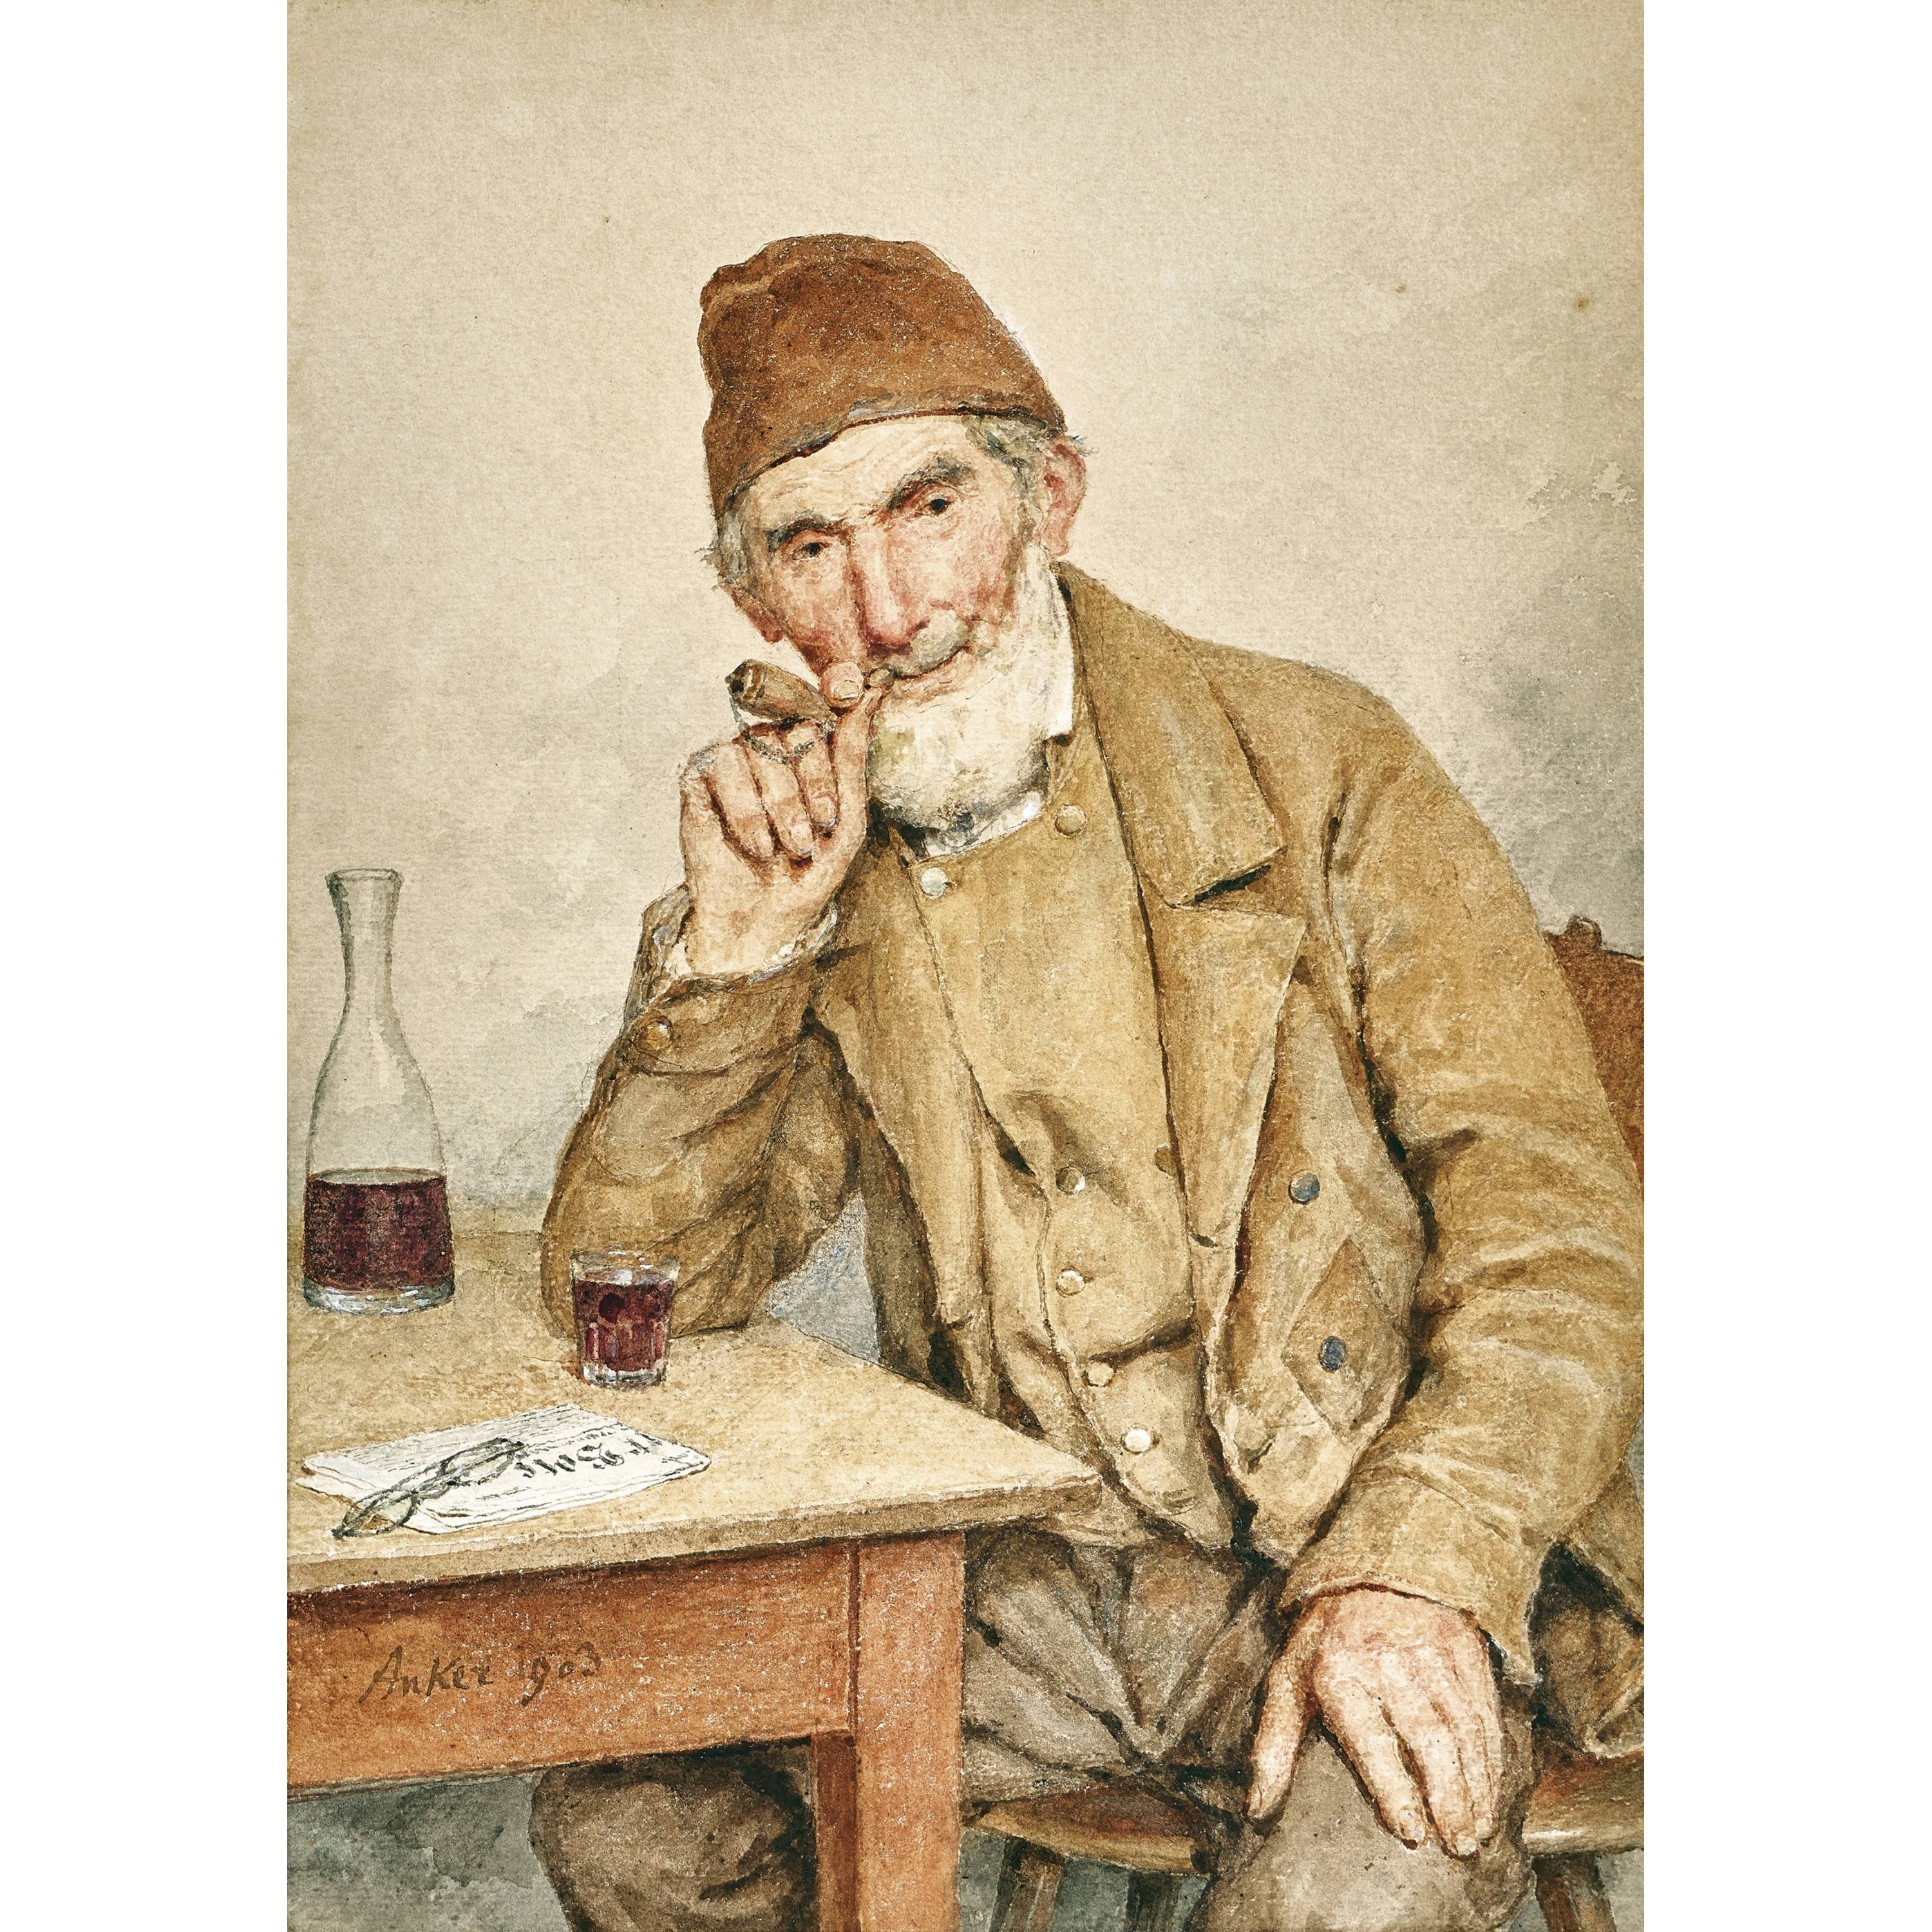 Sitzender Mann mit Pfeife und Glas am Tisch by Albert Anker, 1903